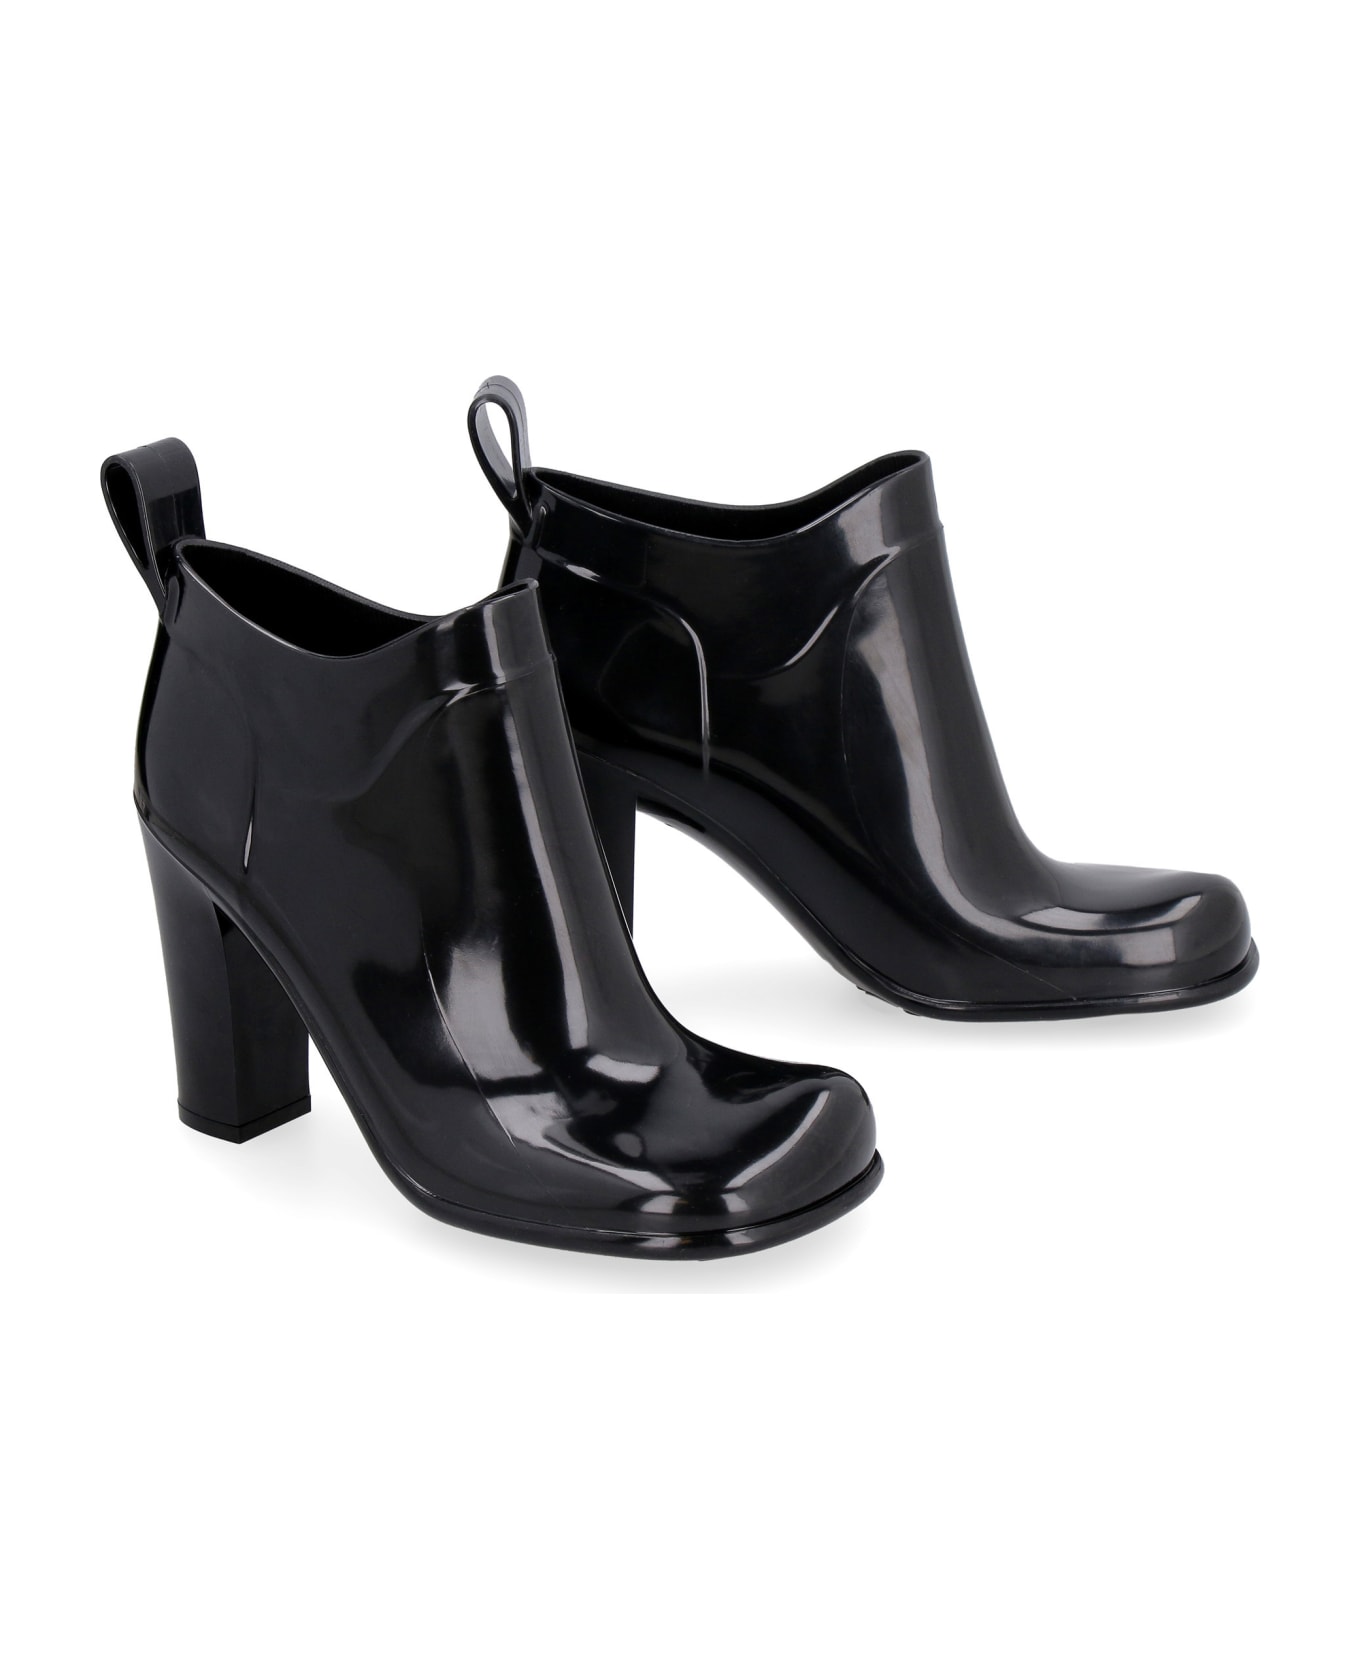 Bottega Veneta Shine Rubber Boots - black ブーツ